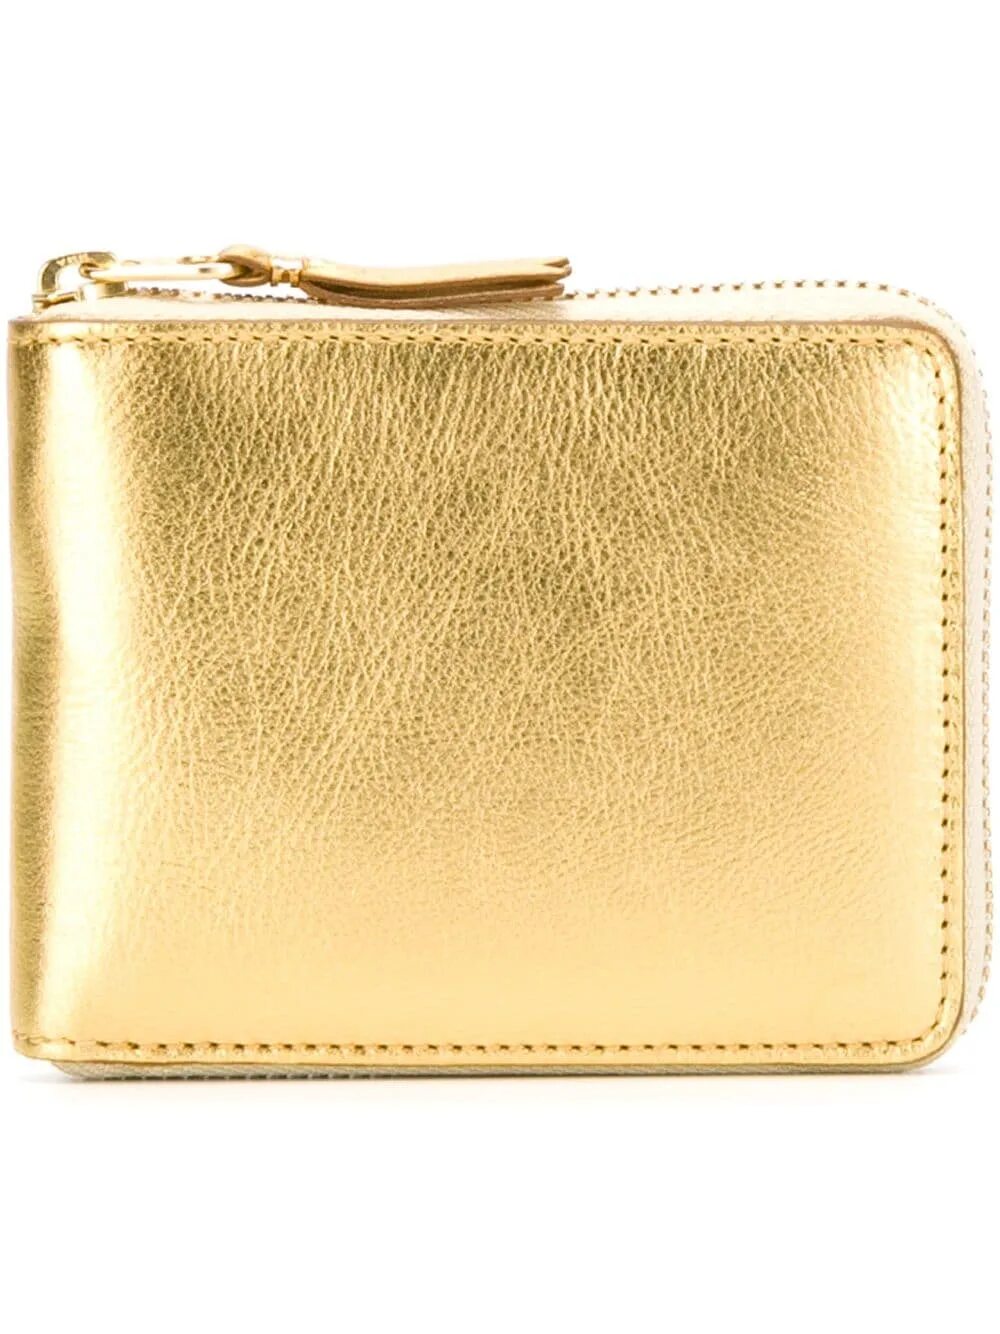 Золотой кошелек. Кошелек золотистый. Золото и кожаный кошелек. Белый кошелёк с золотом.